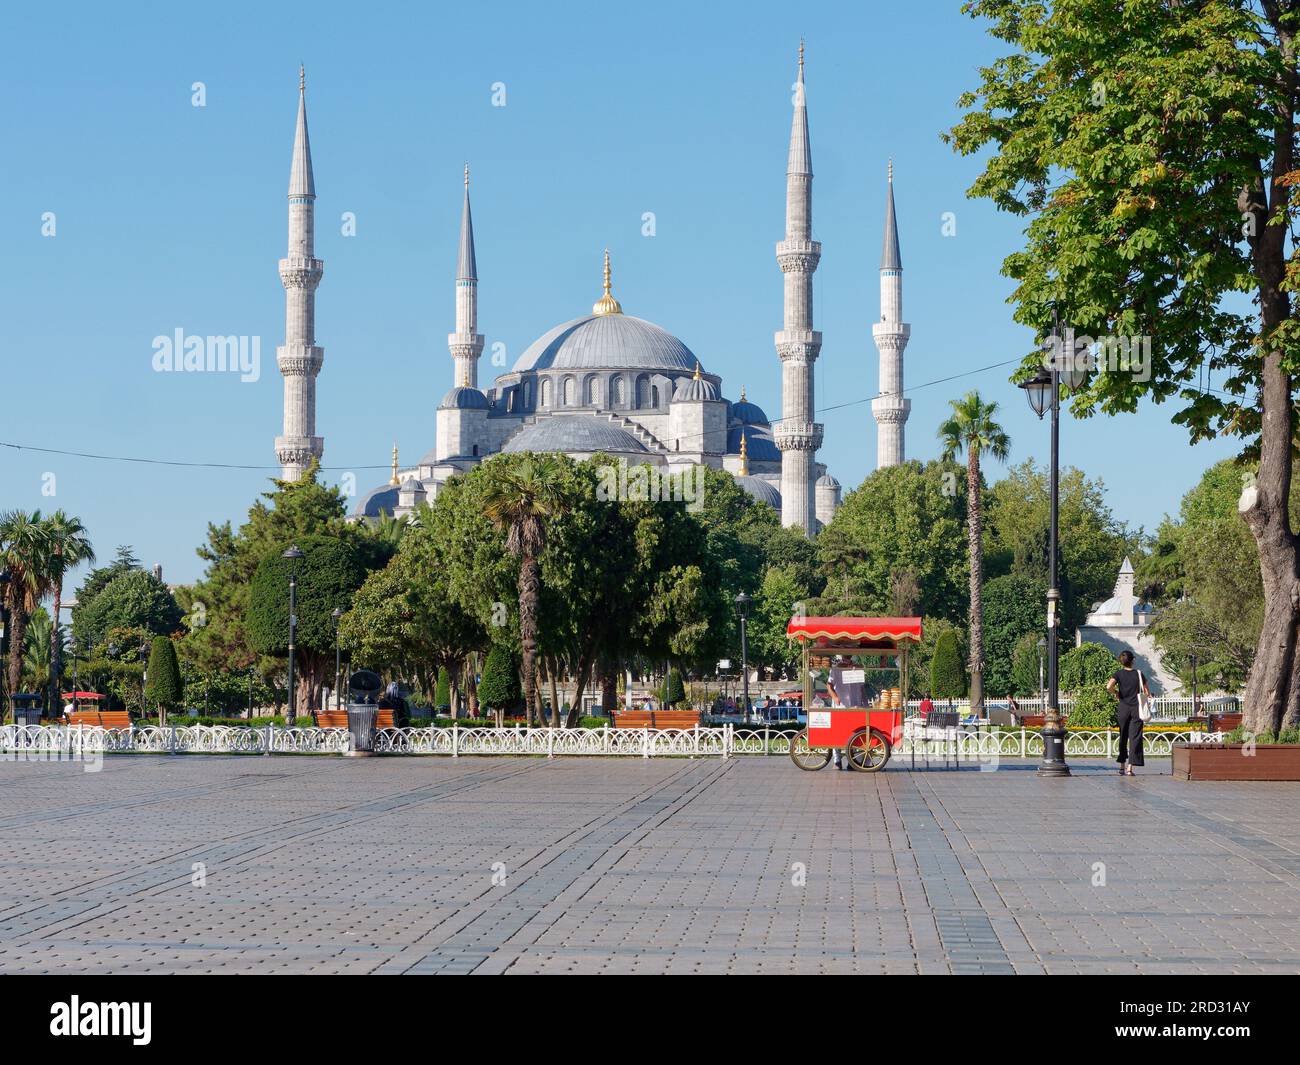 Parc Sultanahmet et mosquée Sultan Ahmed alias Mosquée Bleue un matin d'été, Istanbul, Turquie. Chariot rouge vend des Simits aka bagels turcs Banque D'Images